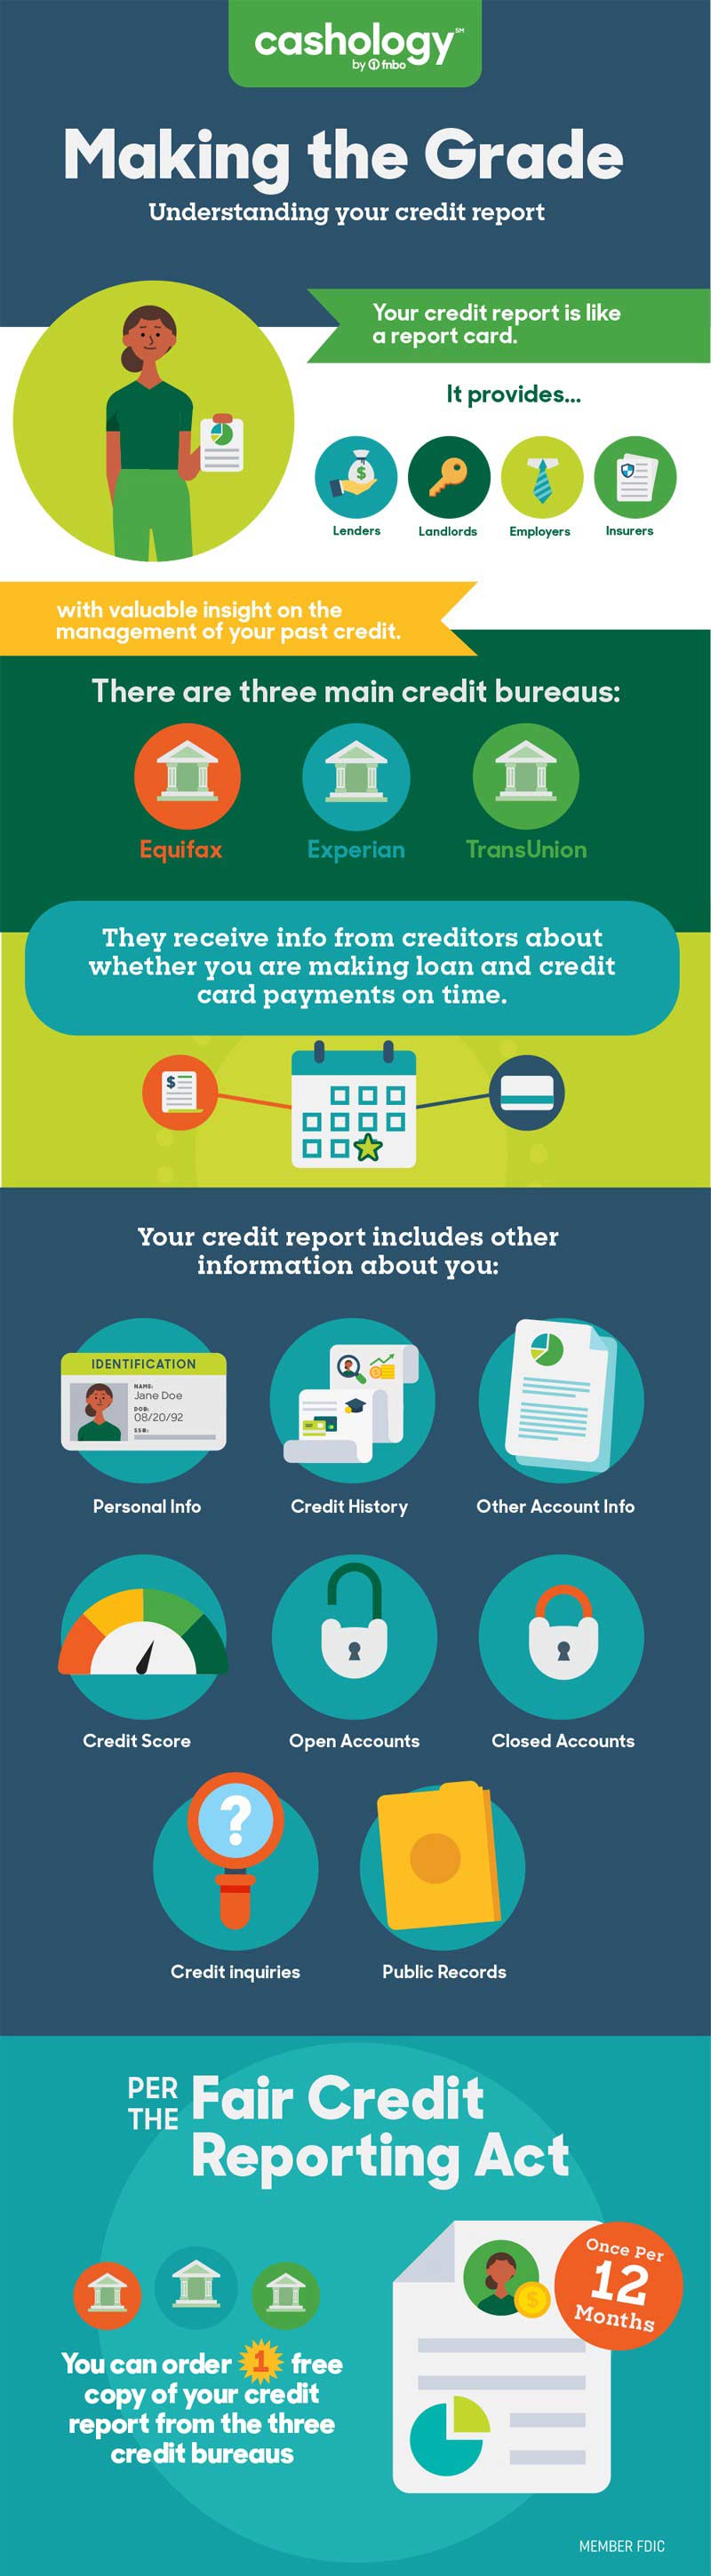 understanding-your-credit-report-infographic-800.jpg